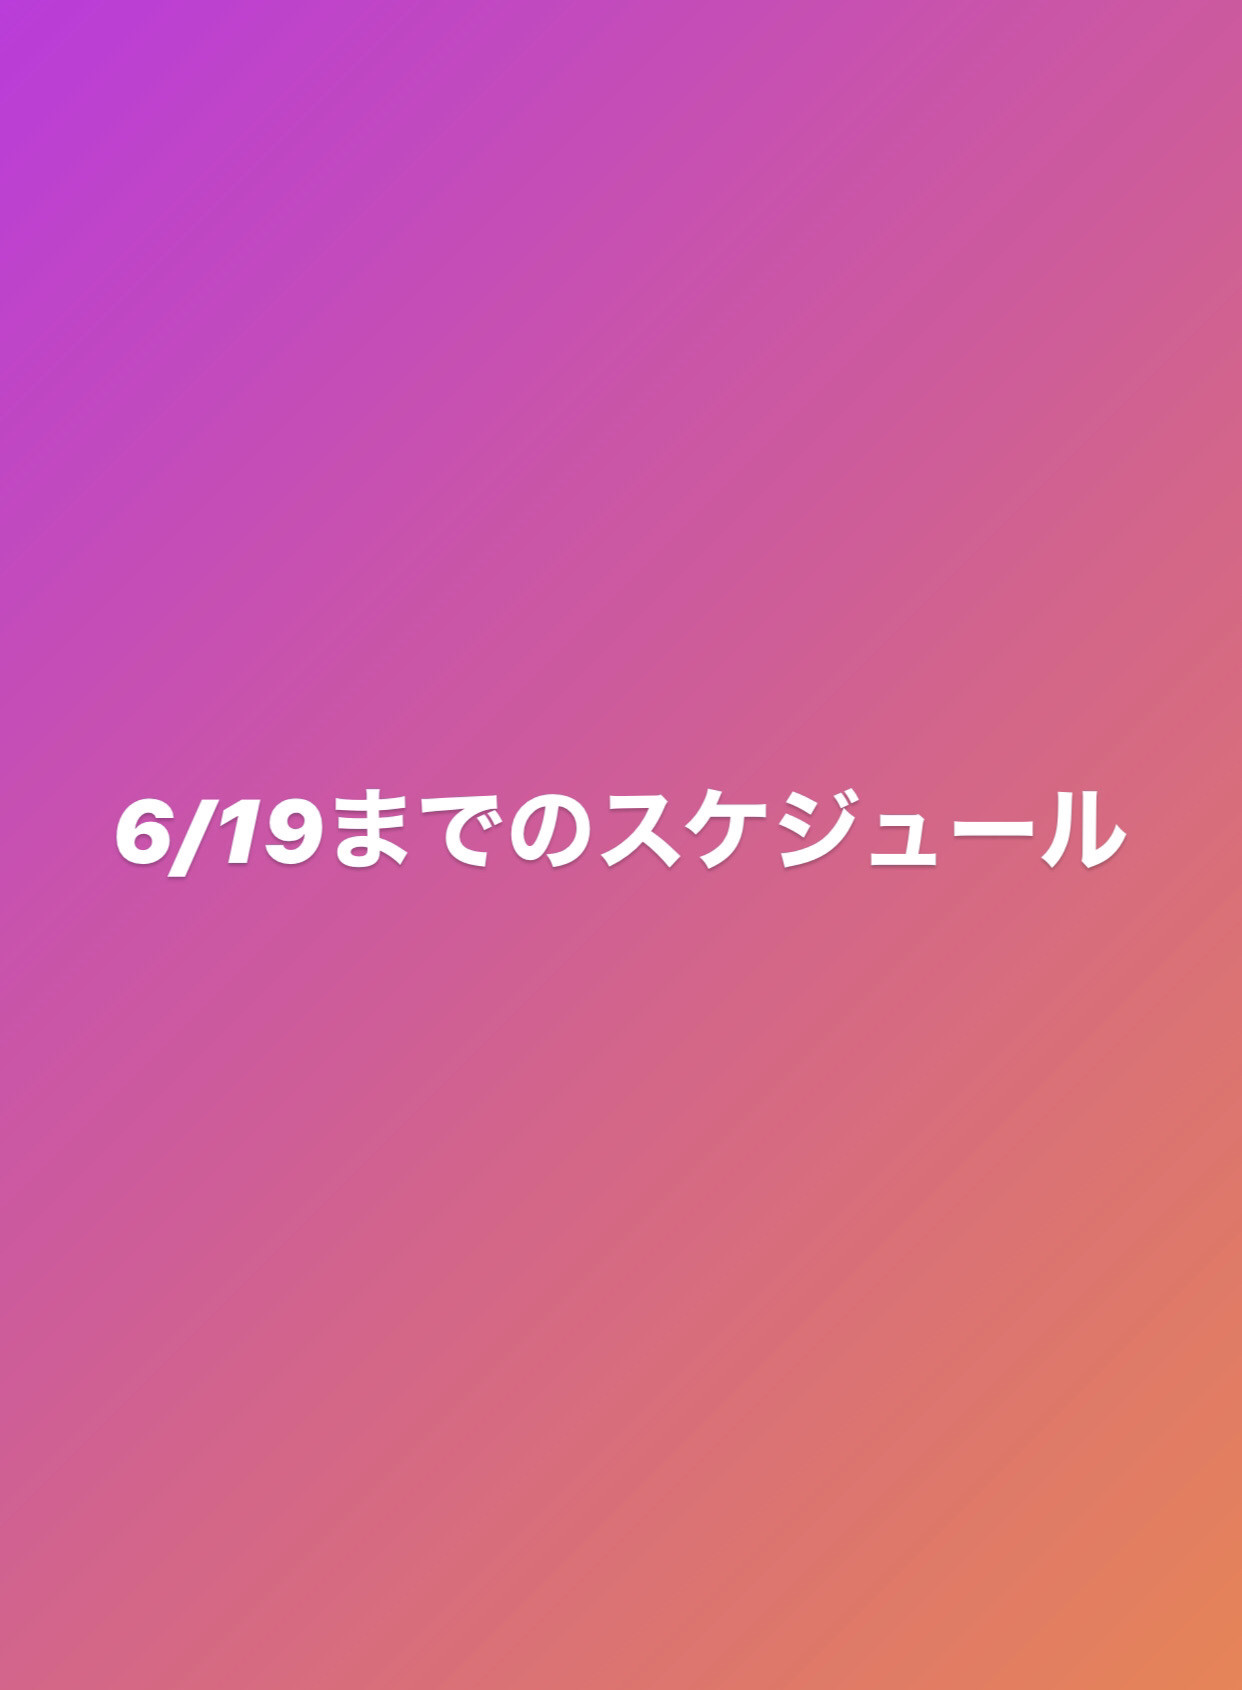 【お知らせ】6/19までのグループクラススケジュール